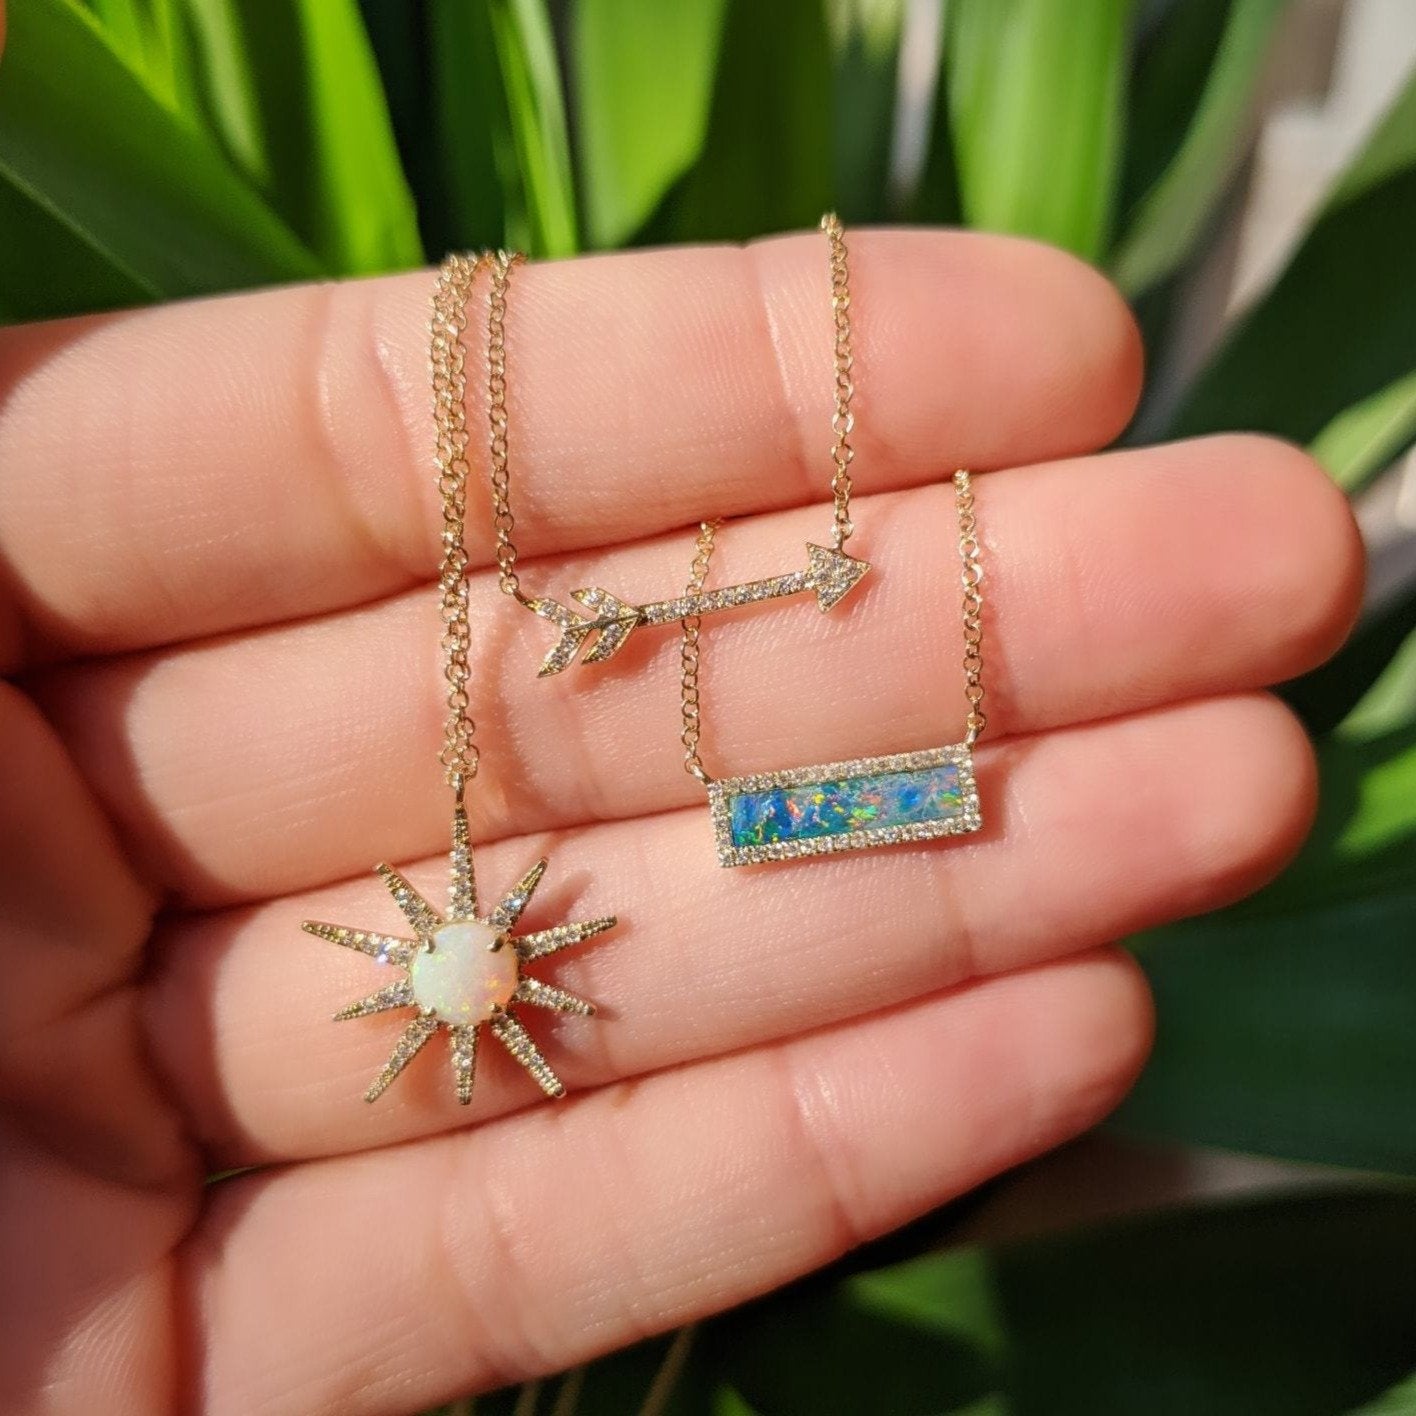 Diamond Arrow Necklace with Opal Kamaria Jewelry